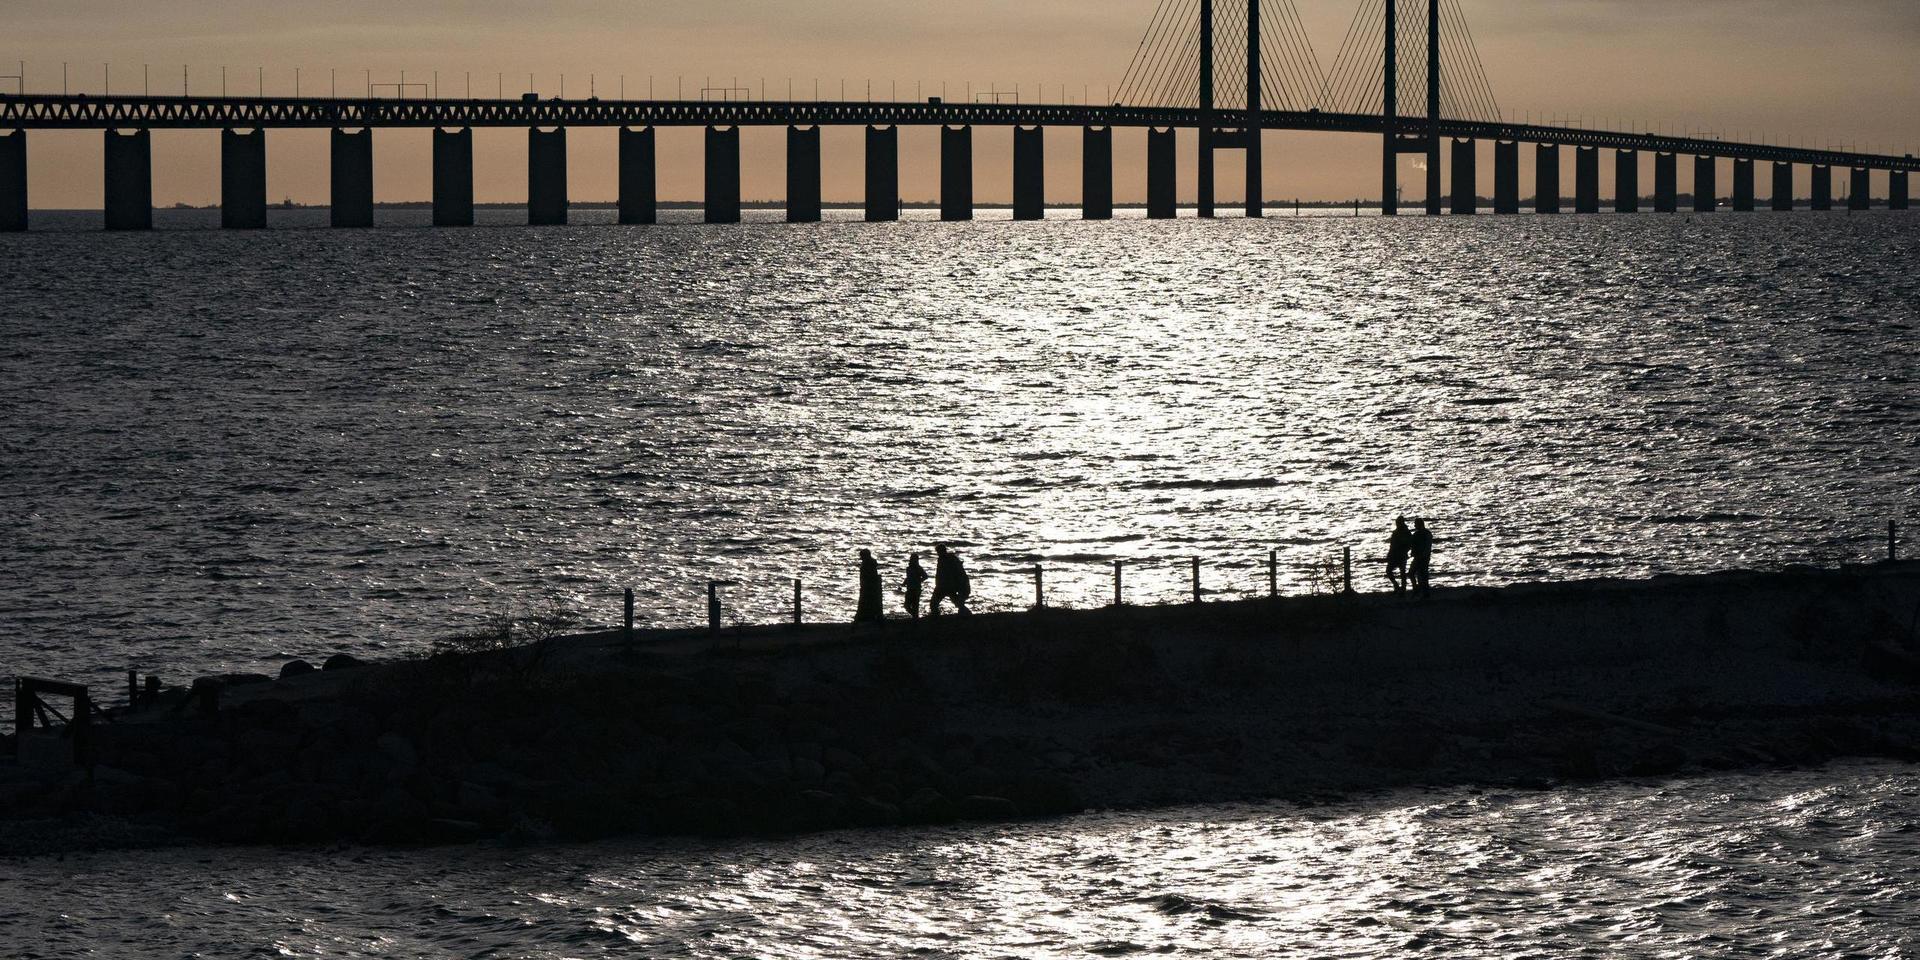 Det blir fortsatt skralt med resande över Öresundsbron. Smittläget i Skåne anses vara för högt, liksom nästan hela övriga Sverige, enligt danska myndigheter. Arkivbild.